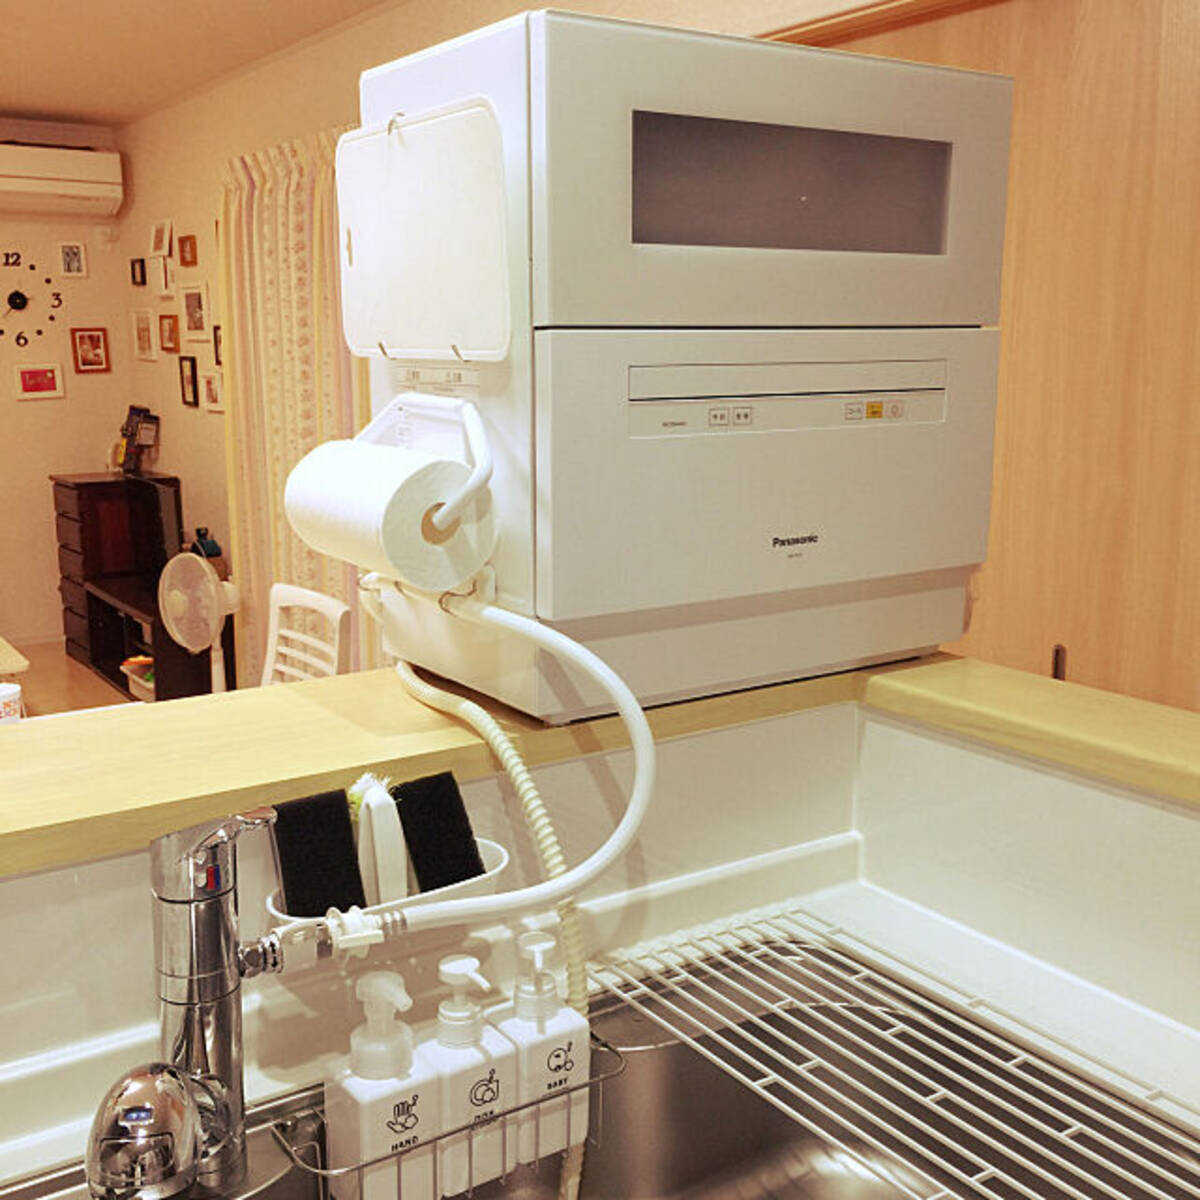 こうやって置くと便利に 食器洗い機のあるキッチン ローリエプレス